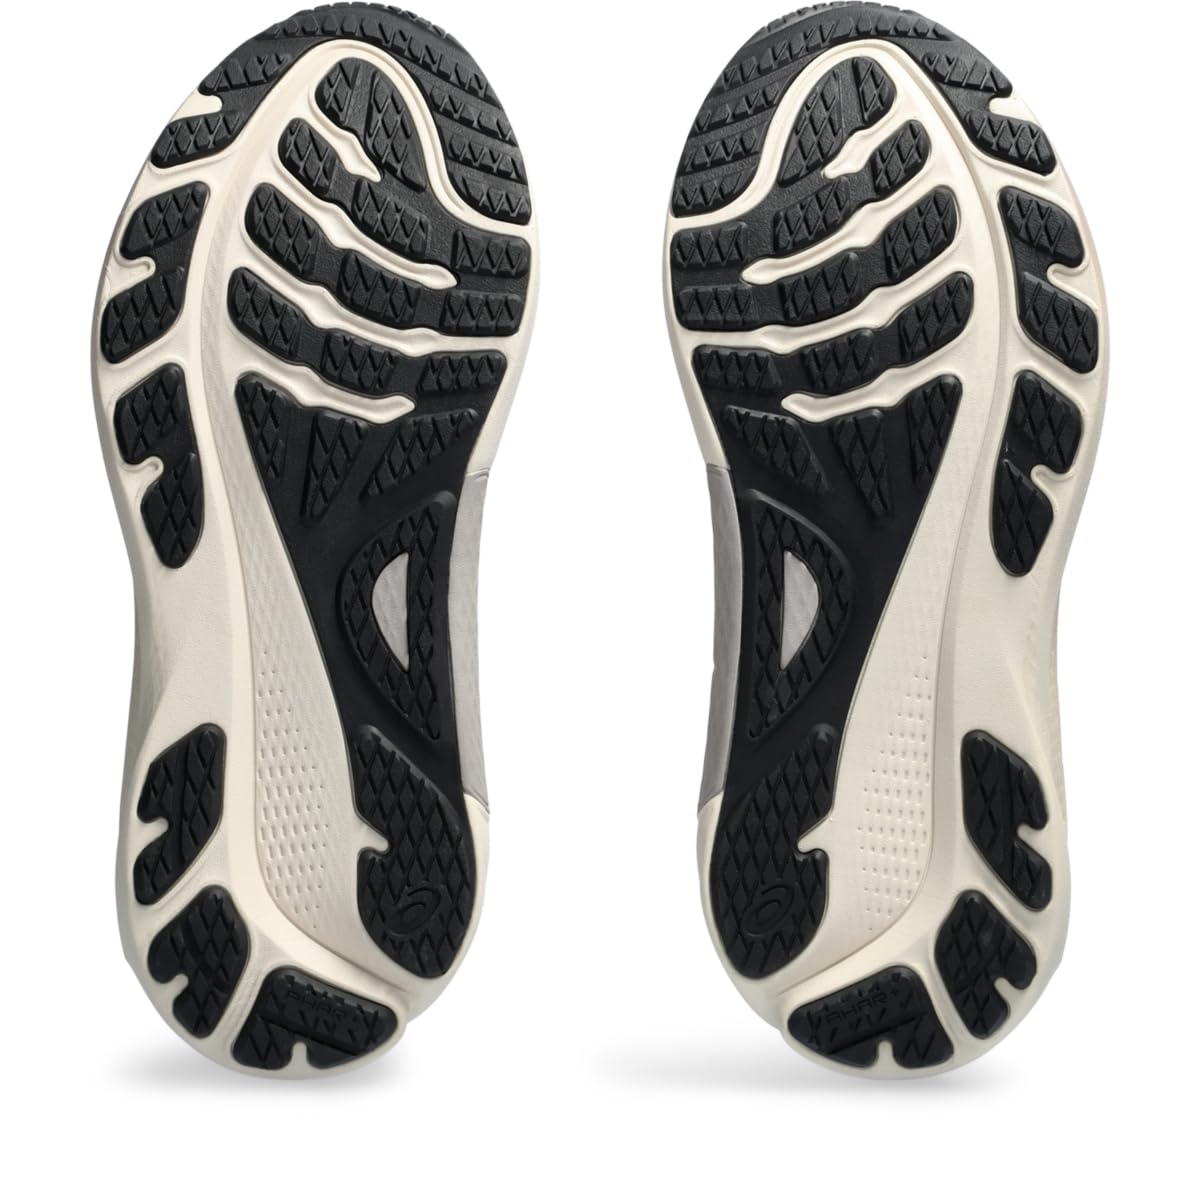 ASICS Men's Gel-Kayano 30 Running Shoes